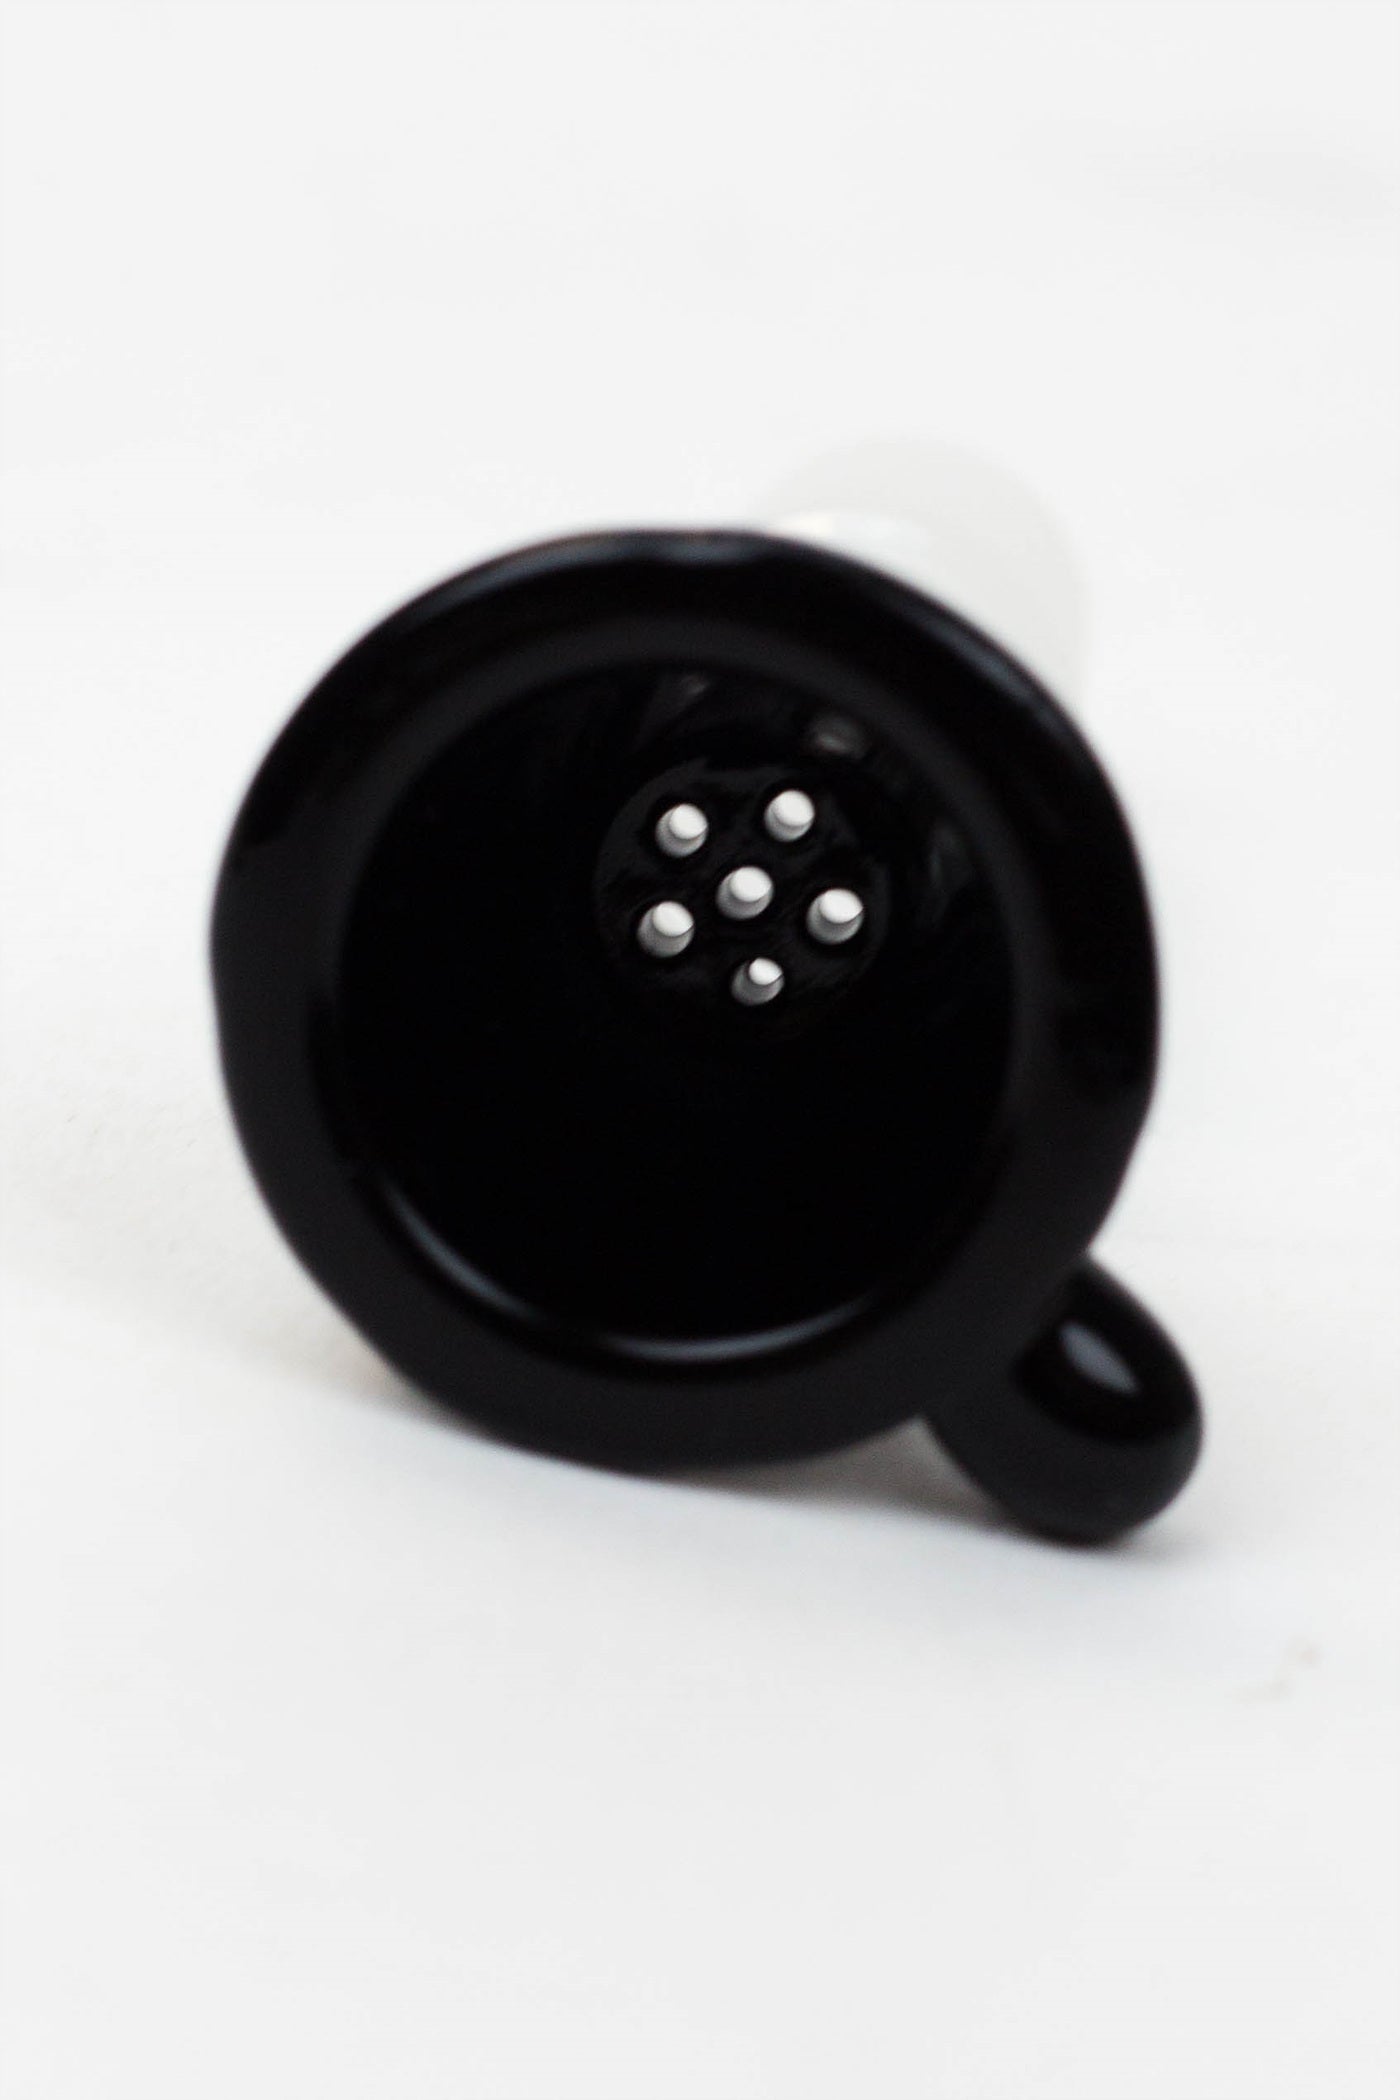 SDF Bowl Black Premium 14 mm Male_1